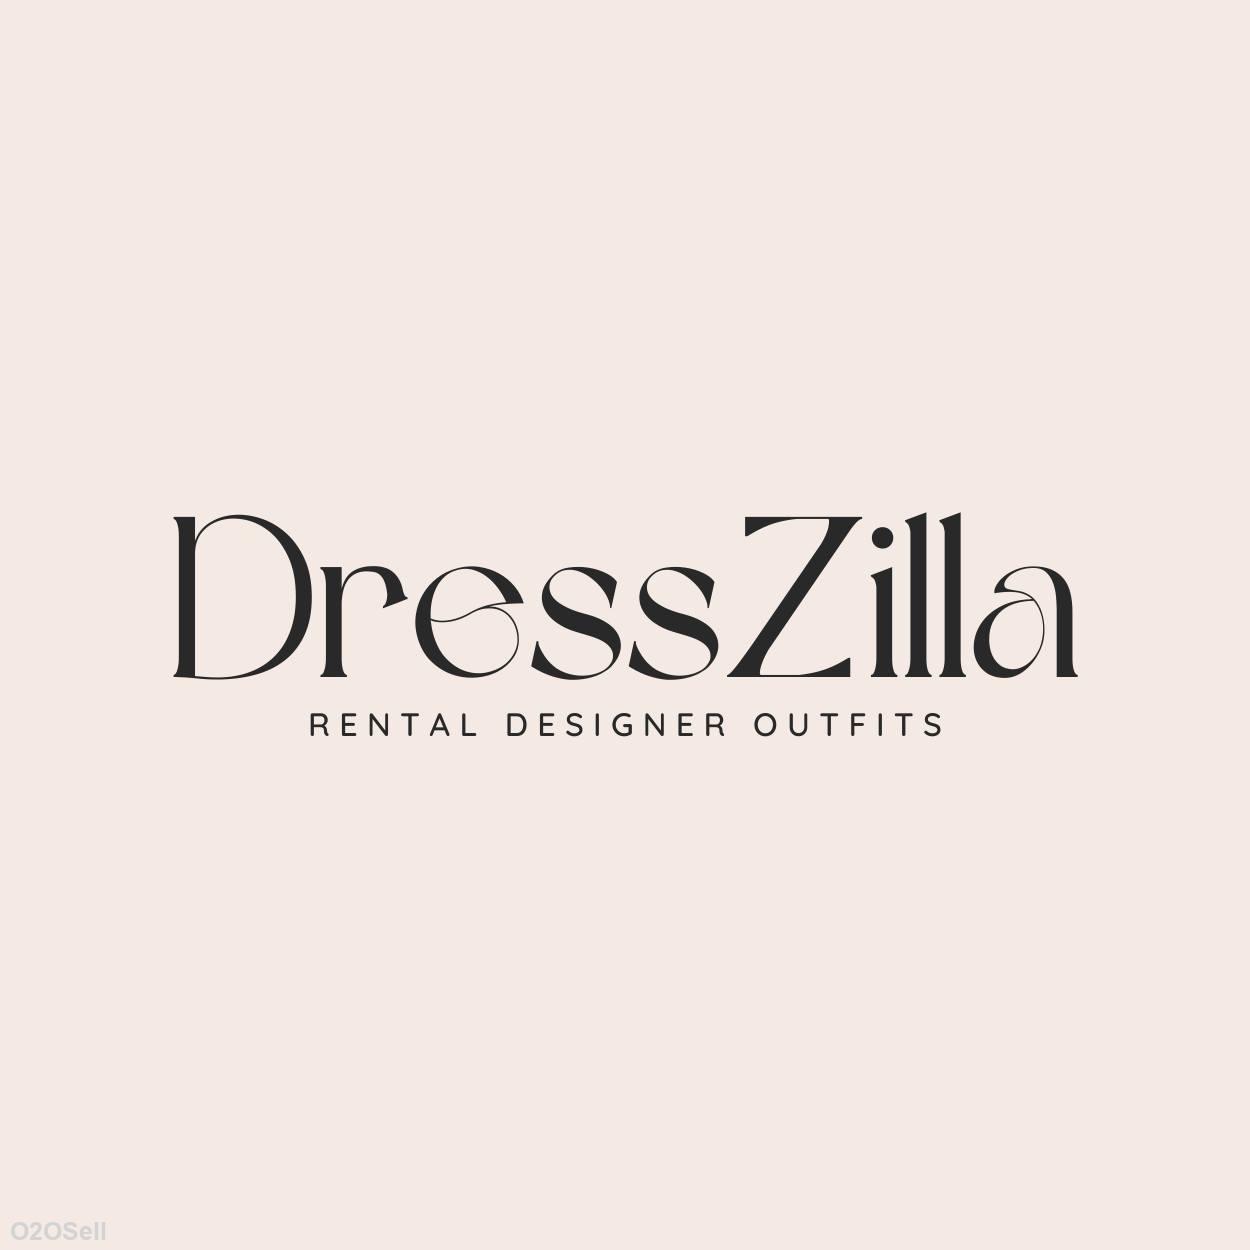 Dresszilla - Profile Image